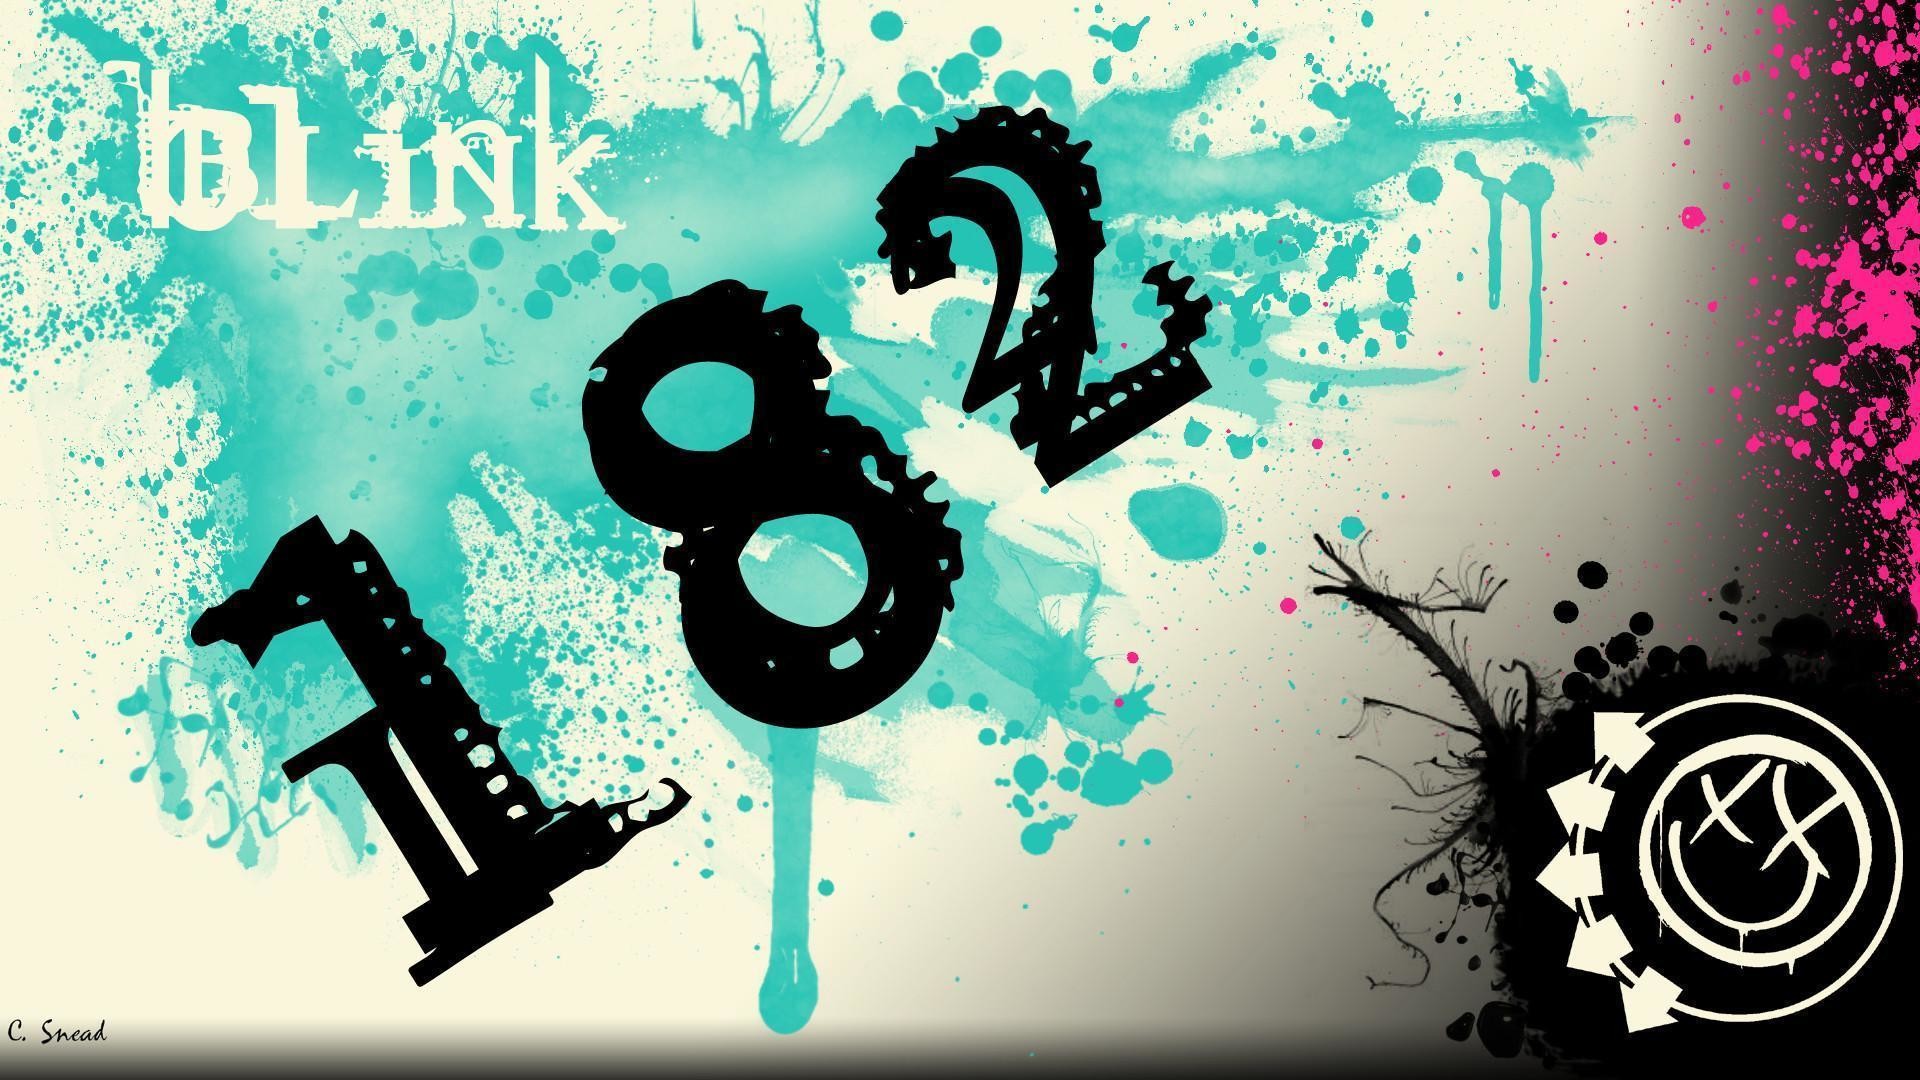 Blink 182 Hd Desktop Wallpapers For Widescreen, High - Blink 182 Wall Paper - HD Wallpaper 